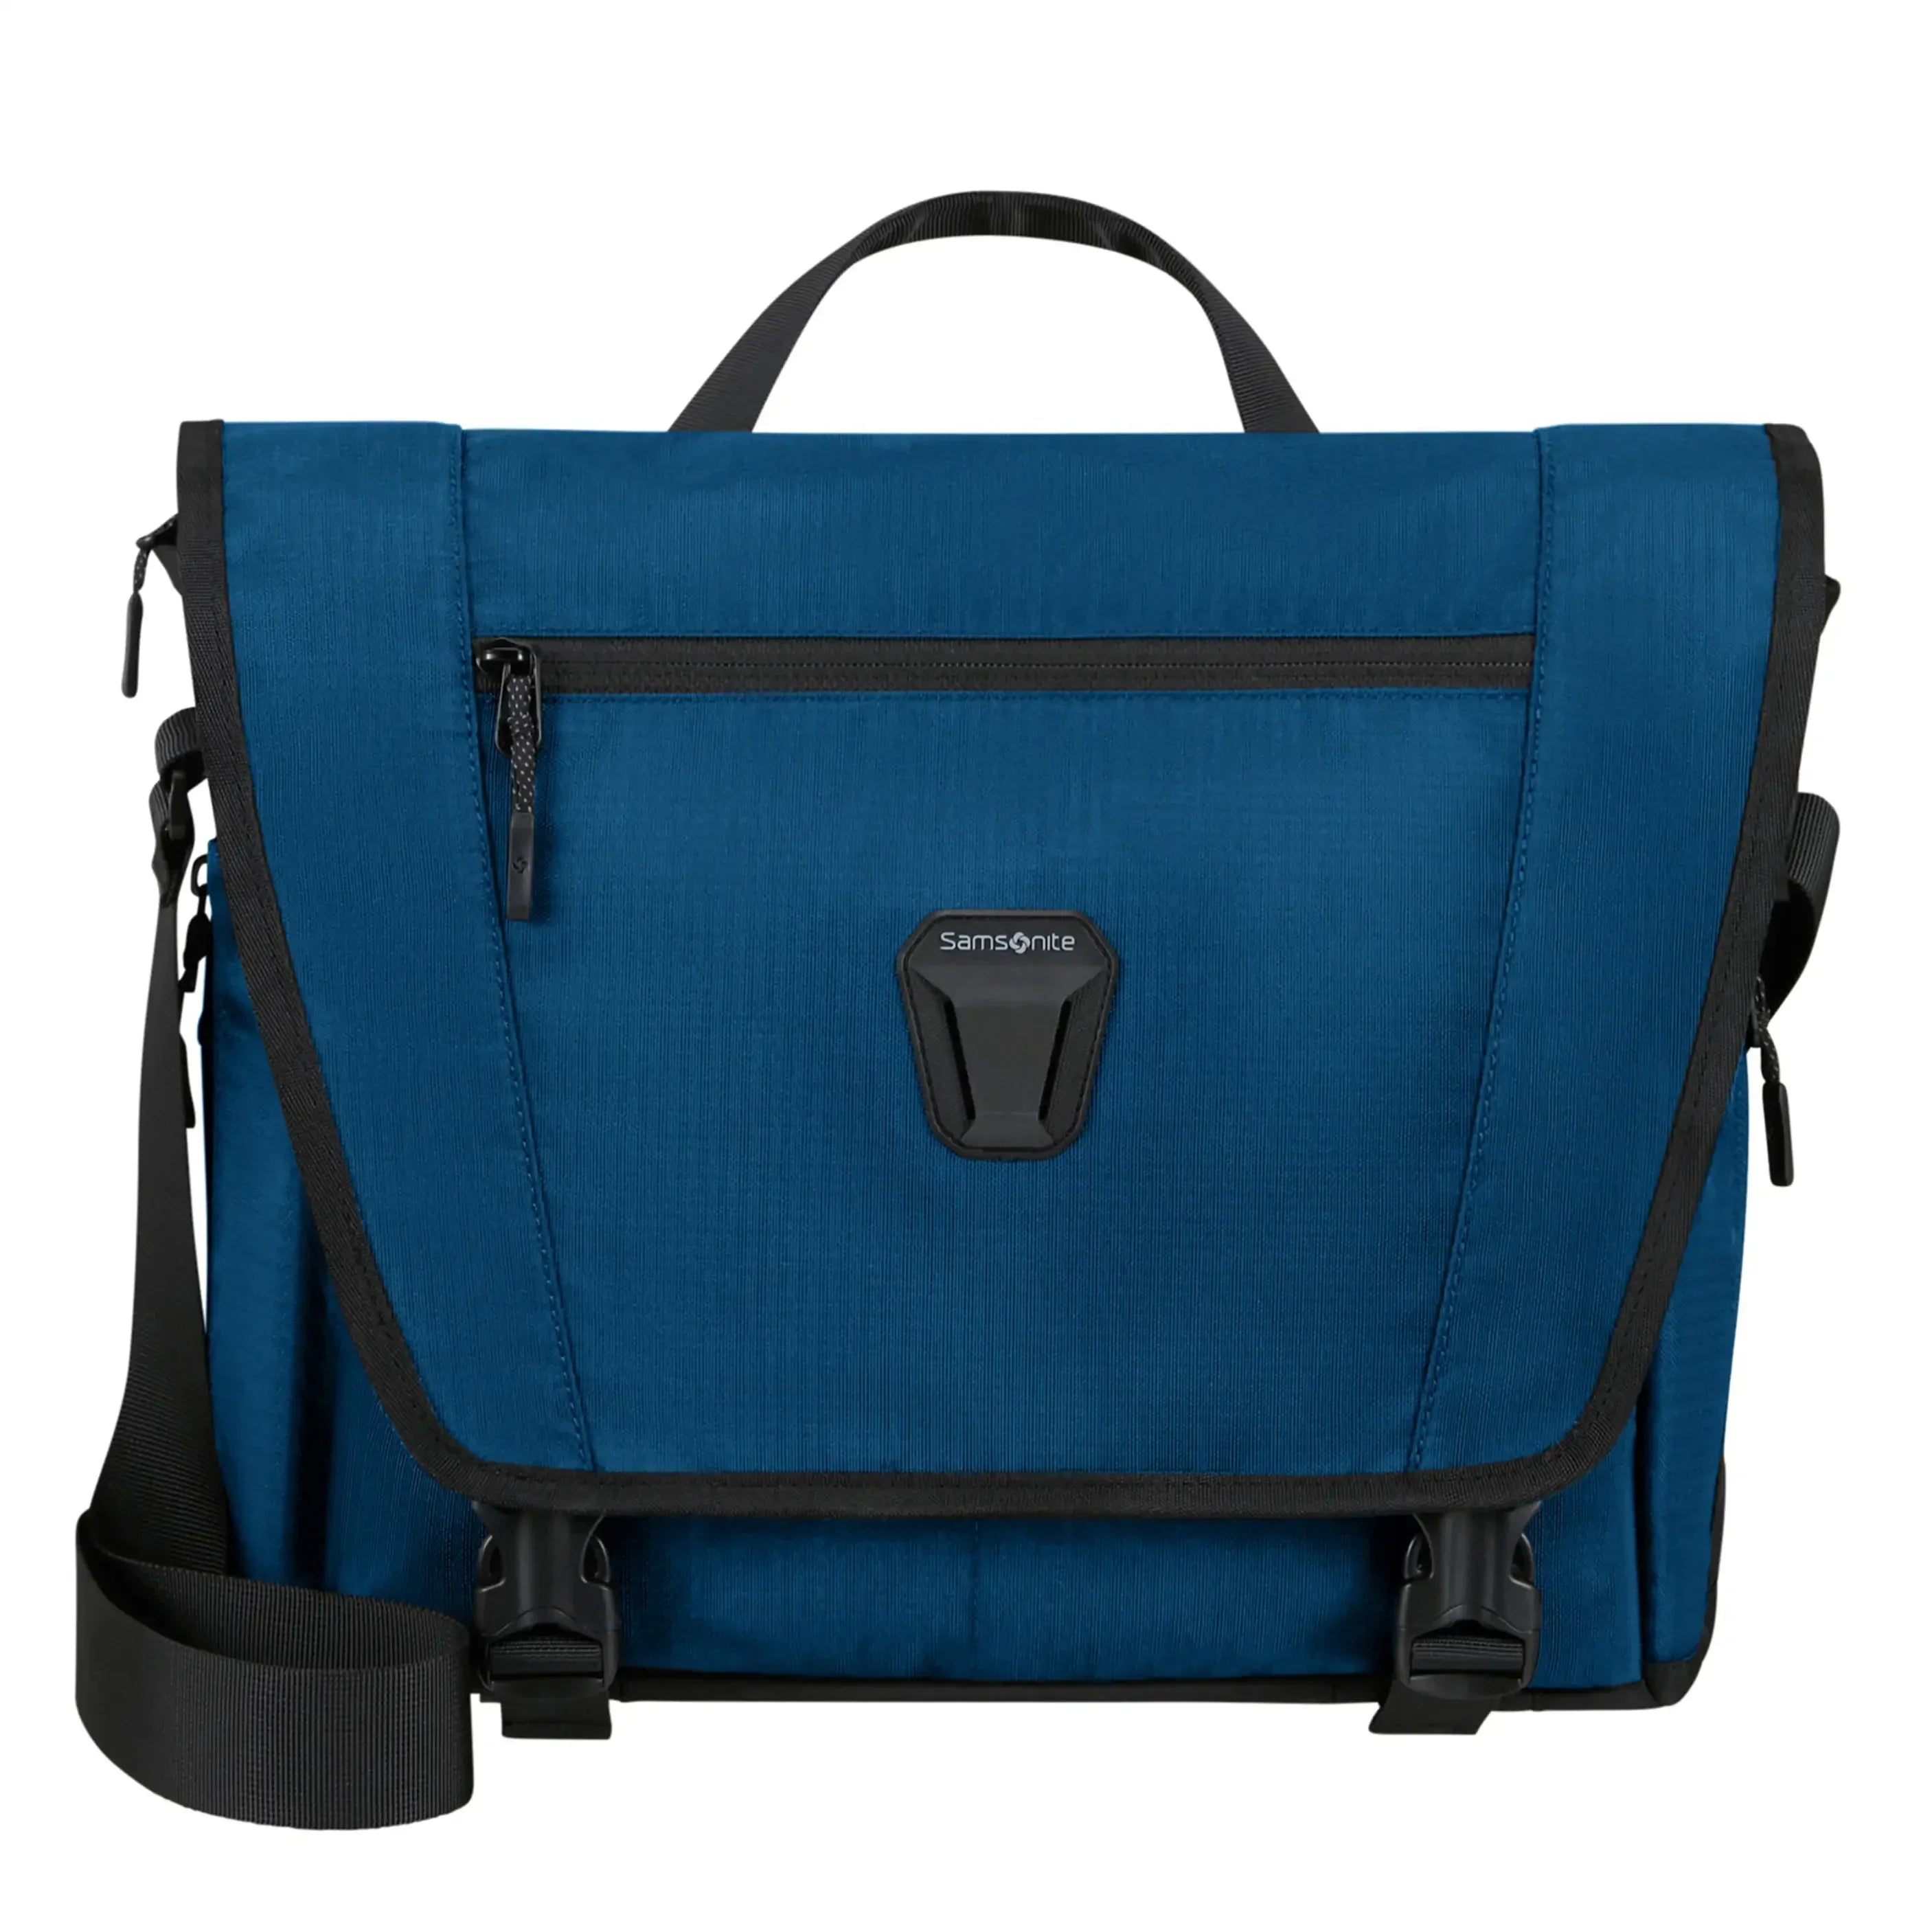 Samsonite Dye-Namic Messenger Bag 39 cm - blue